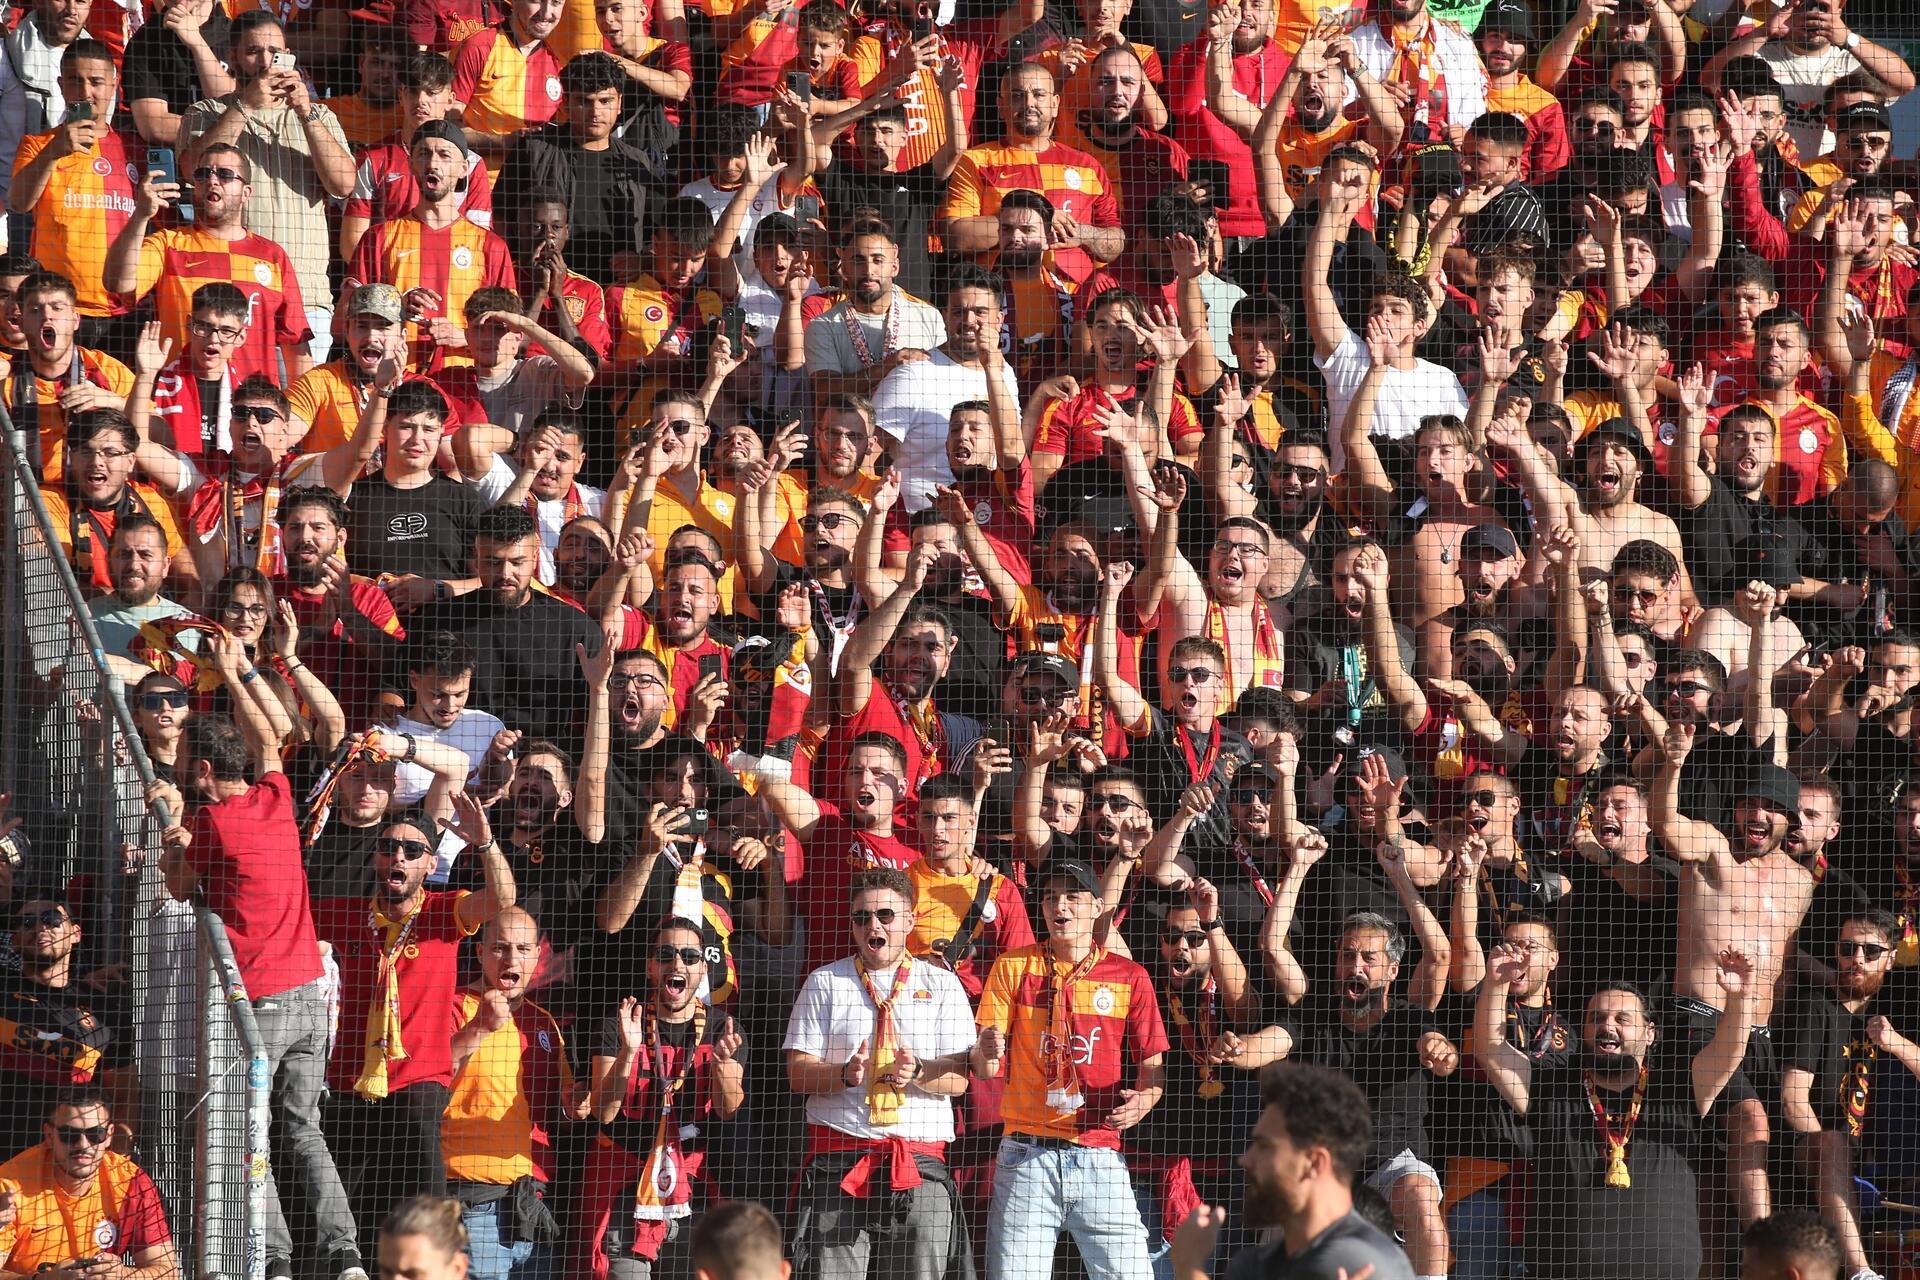 Sturm Graz Galatasaray Ma Ndan En Zel Foto Raflar Son Dakika Spor